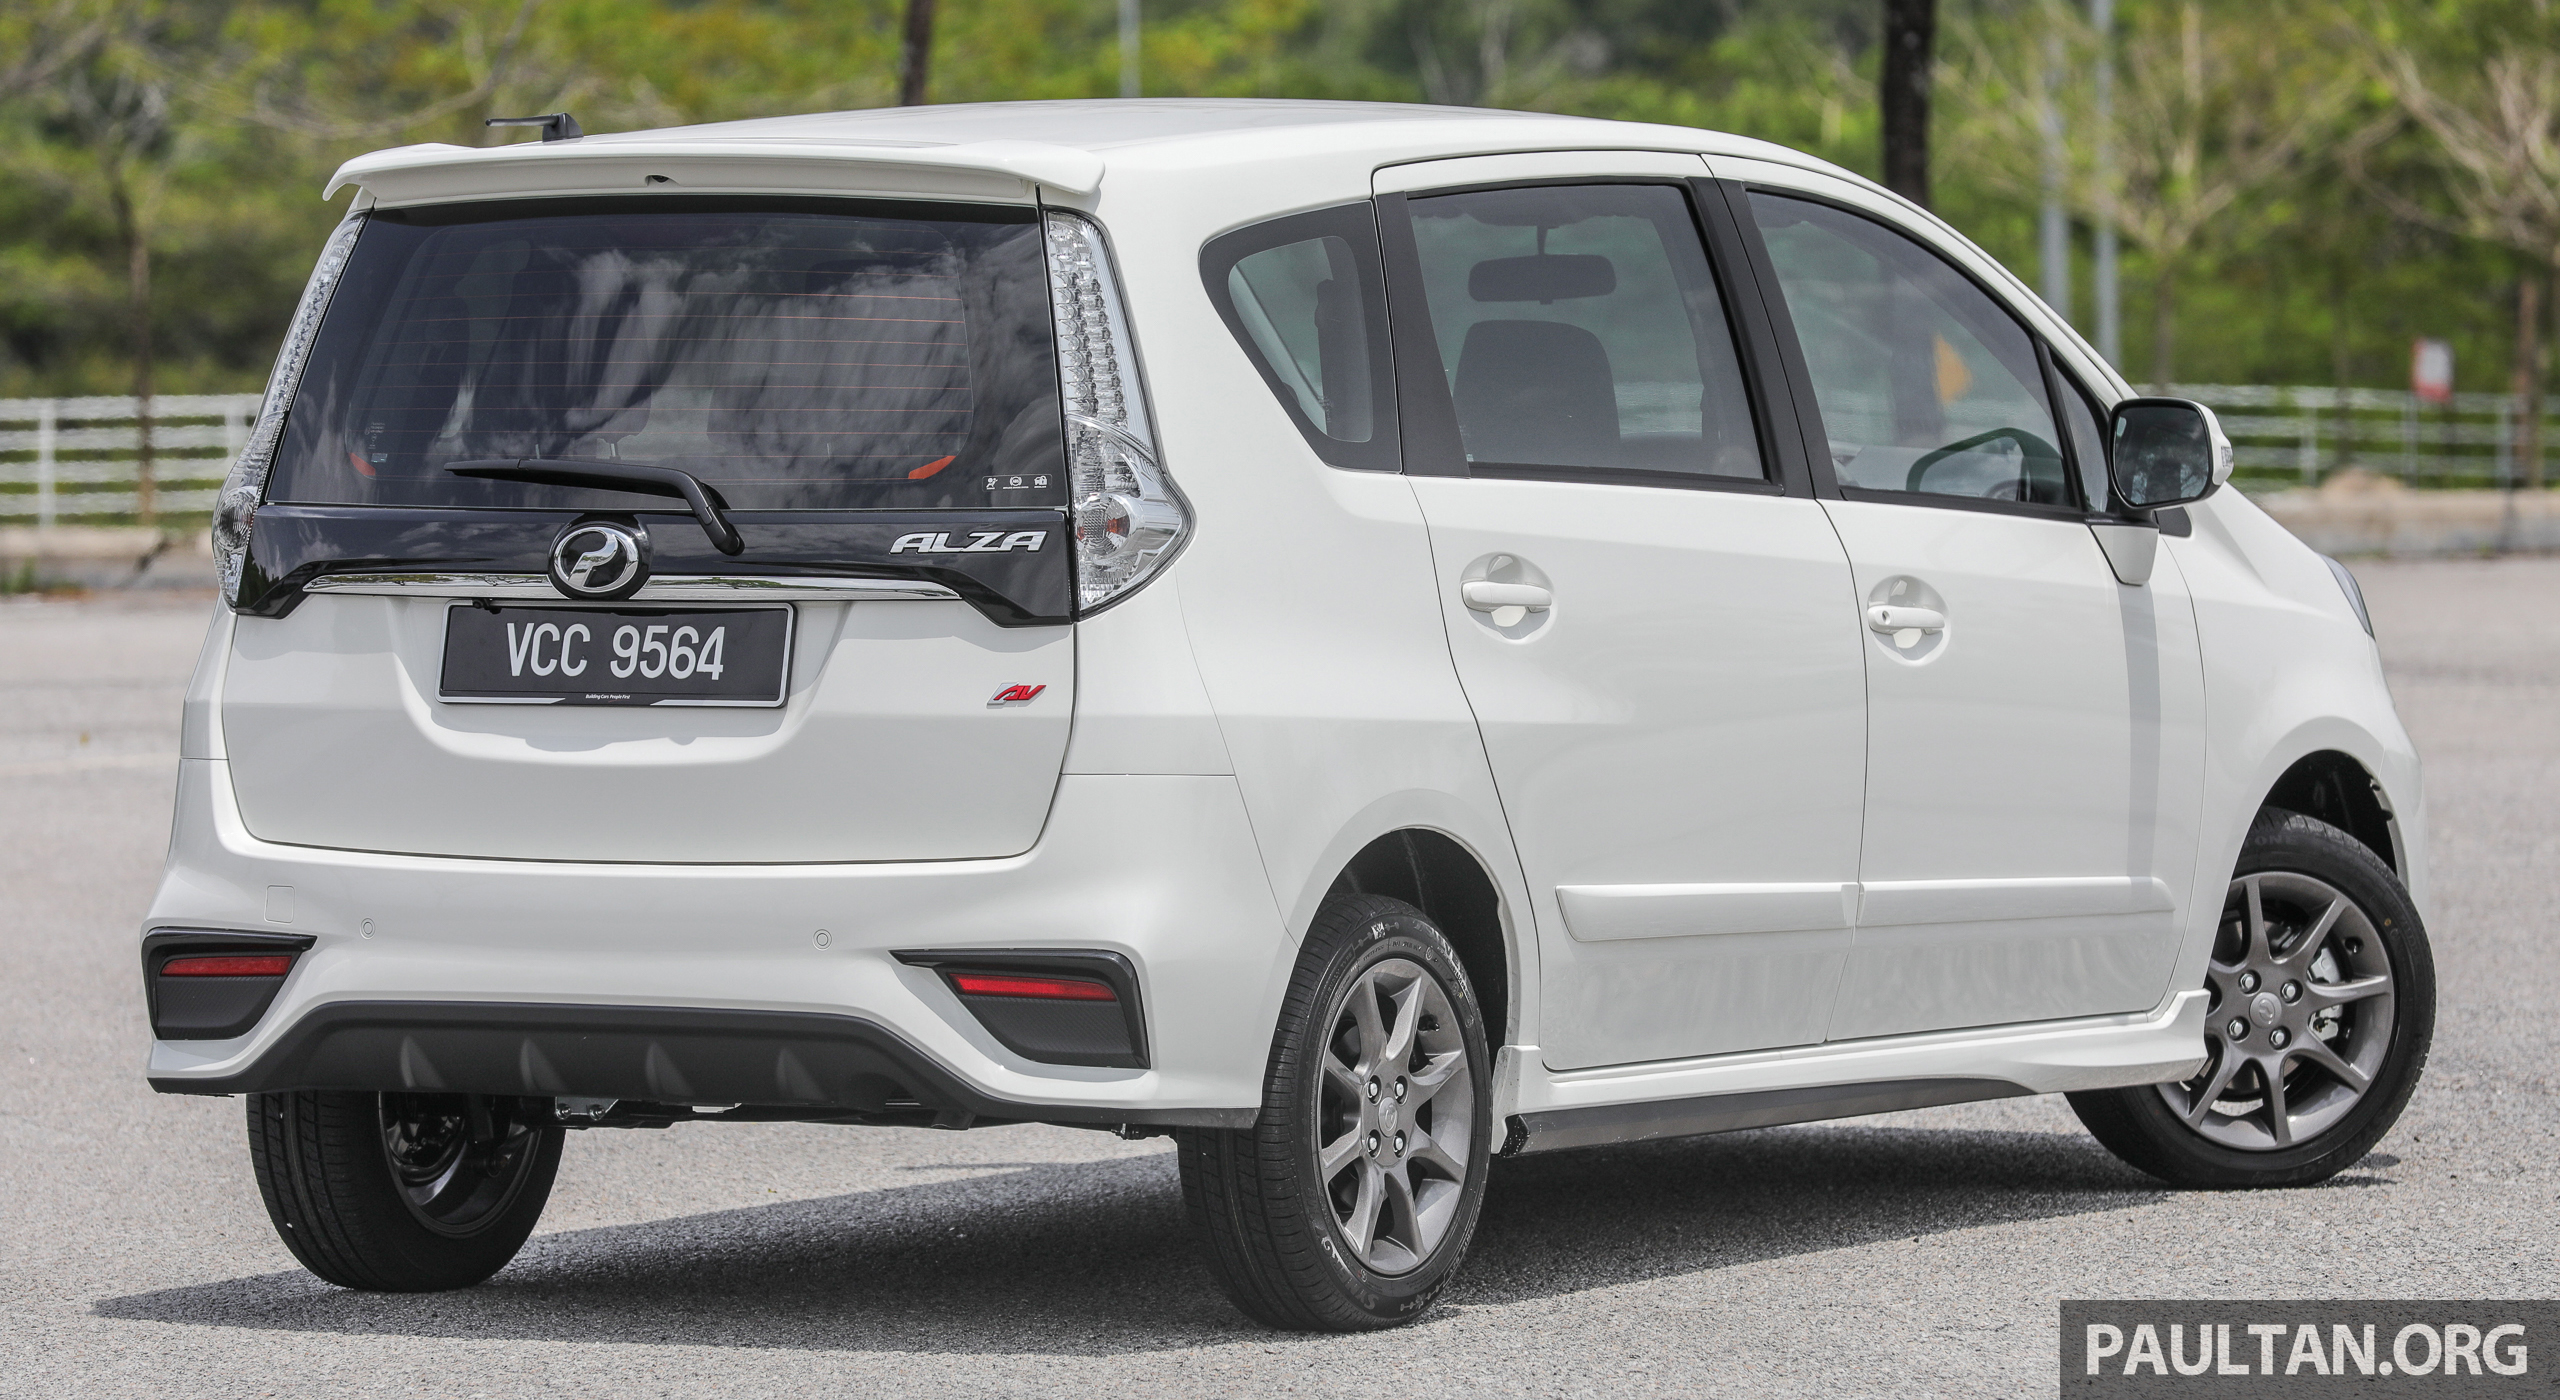 GALERI: Perodua Alza facelift – Advance dan SE Paul Tan 